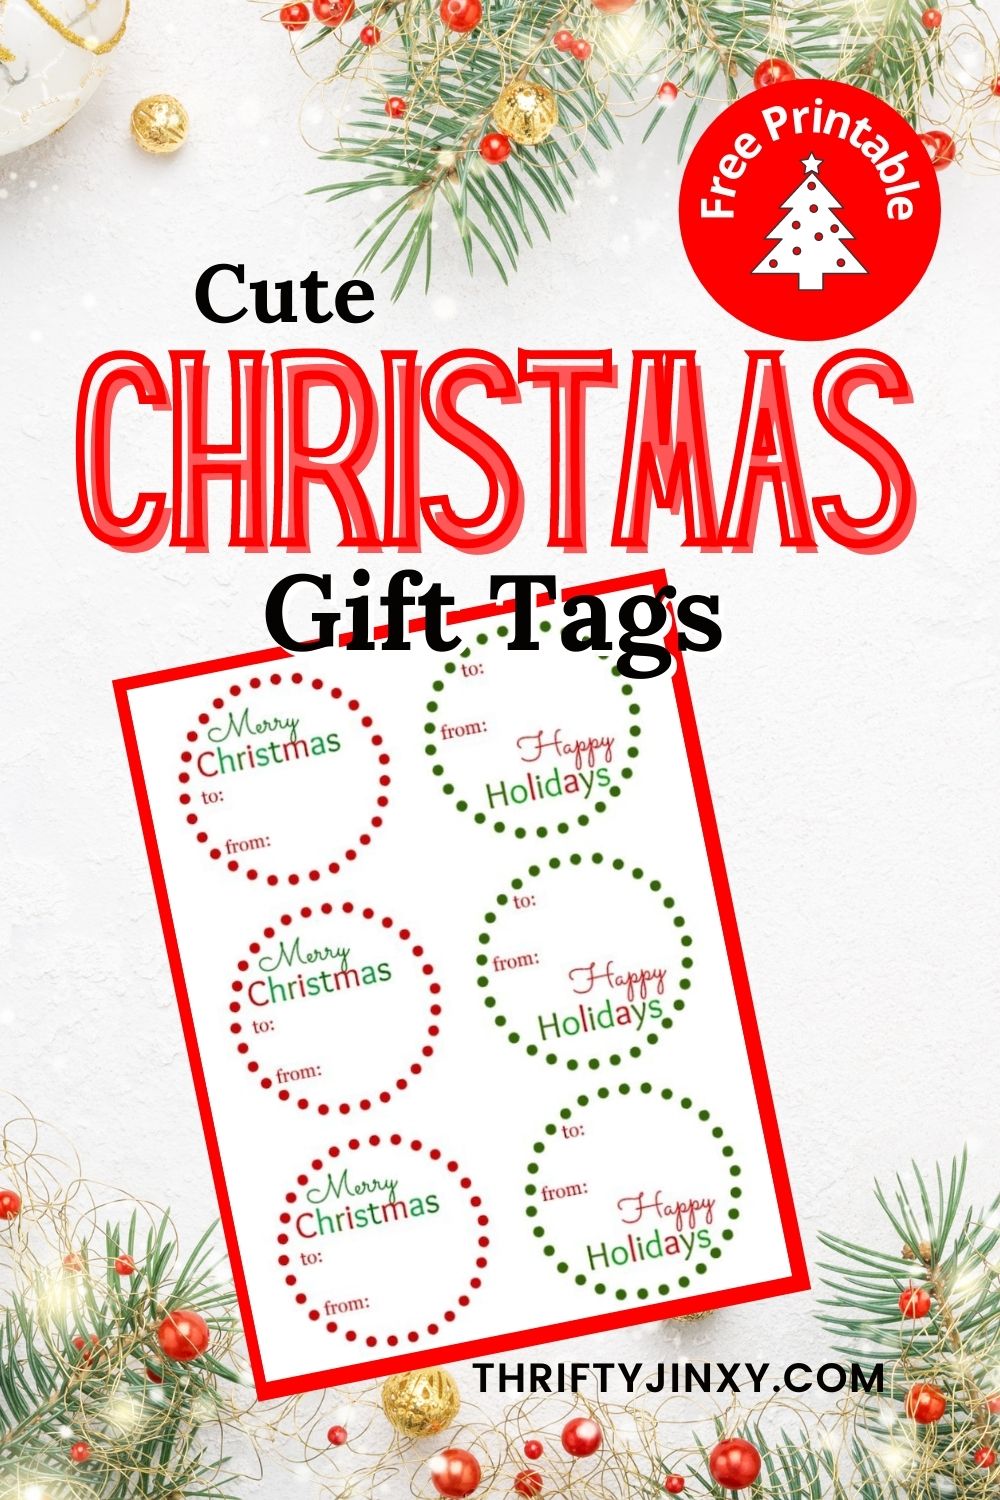 Christmas and Holiday Gift Tags Printable Editable Labels Ornament   Holiday gift tags printable, Christmas gift tags free, Christmas gift tags  printable